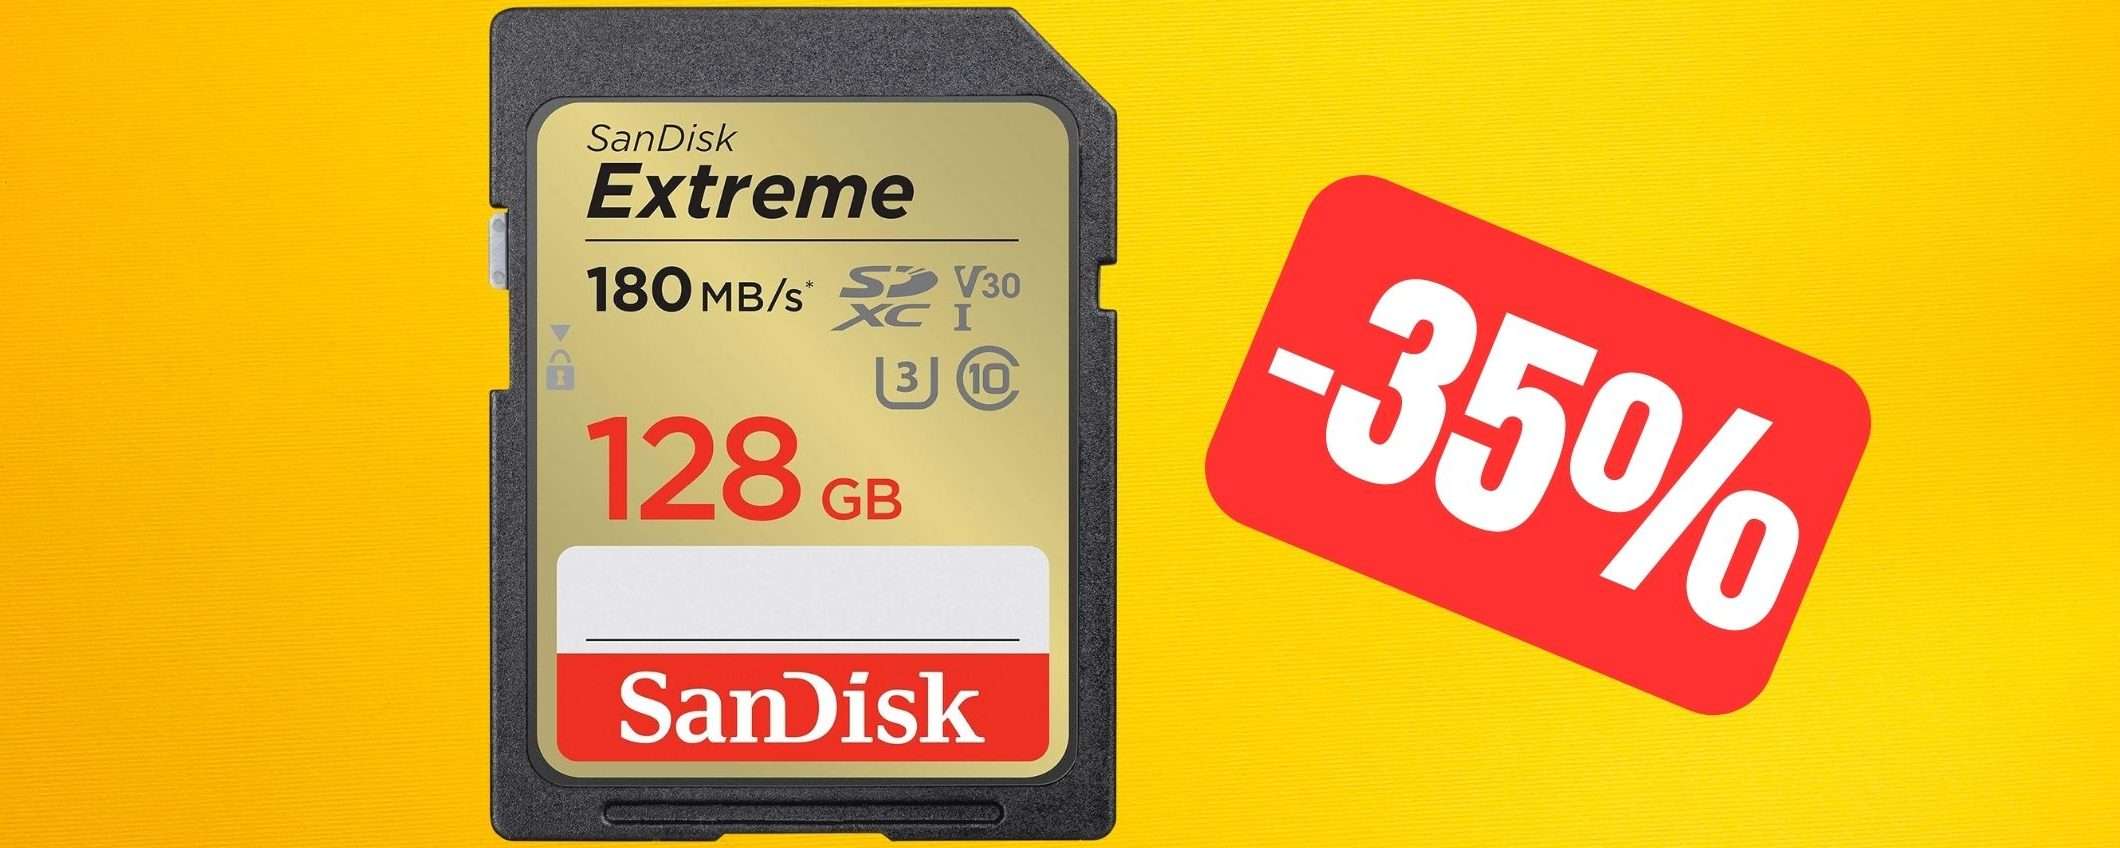 SanDisk Extreme SDHC da 128GB: VELOCISSIMA e in SUPER SCONTO